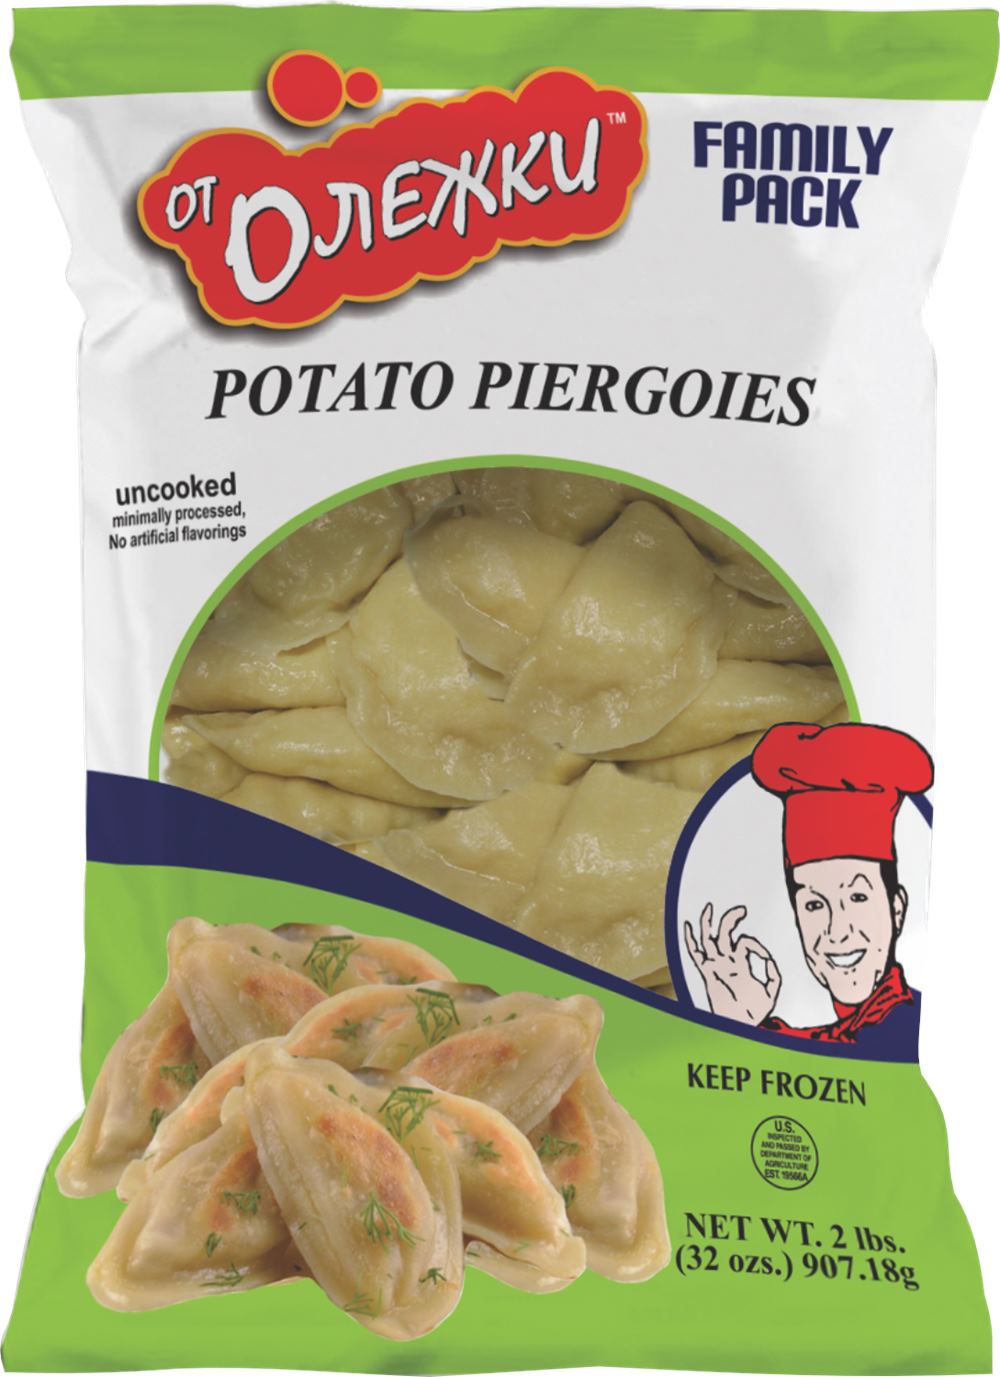 Potato Pierogi